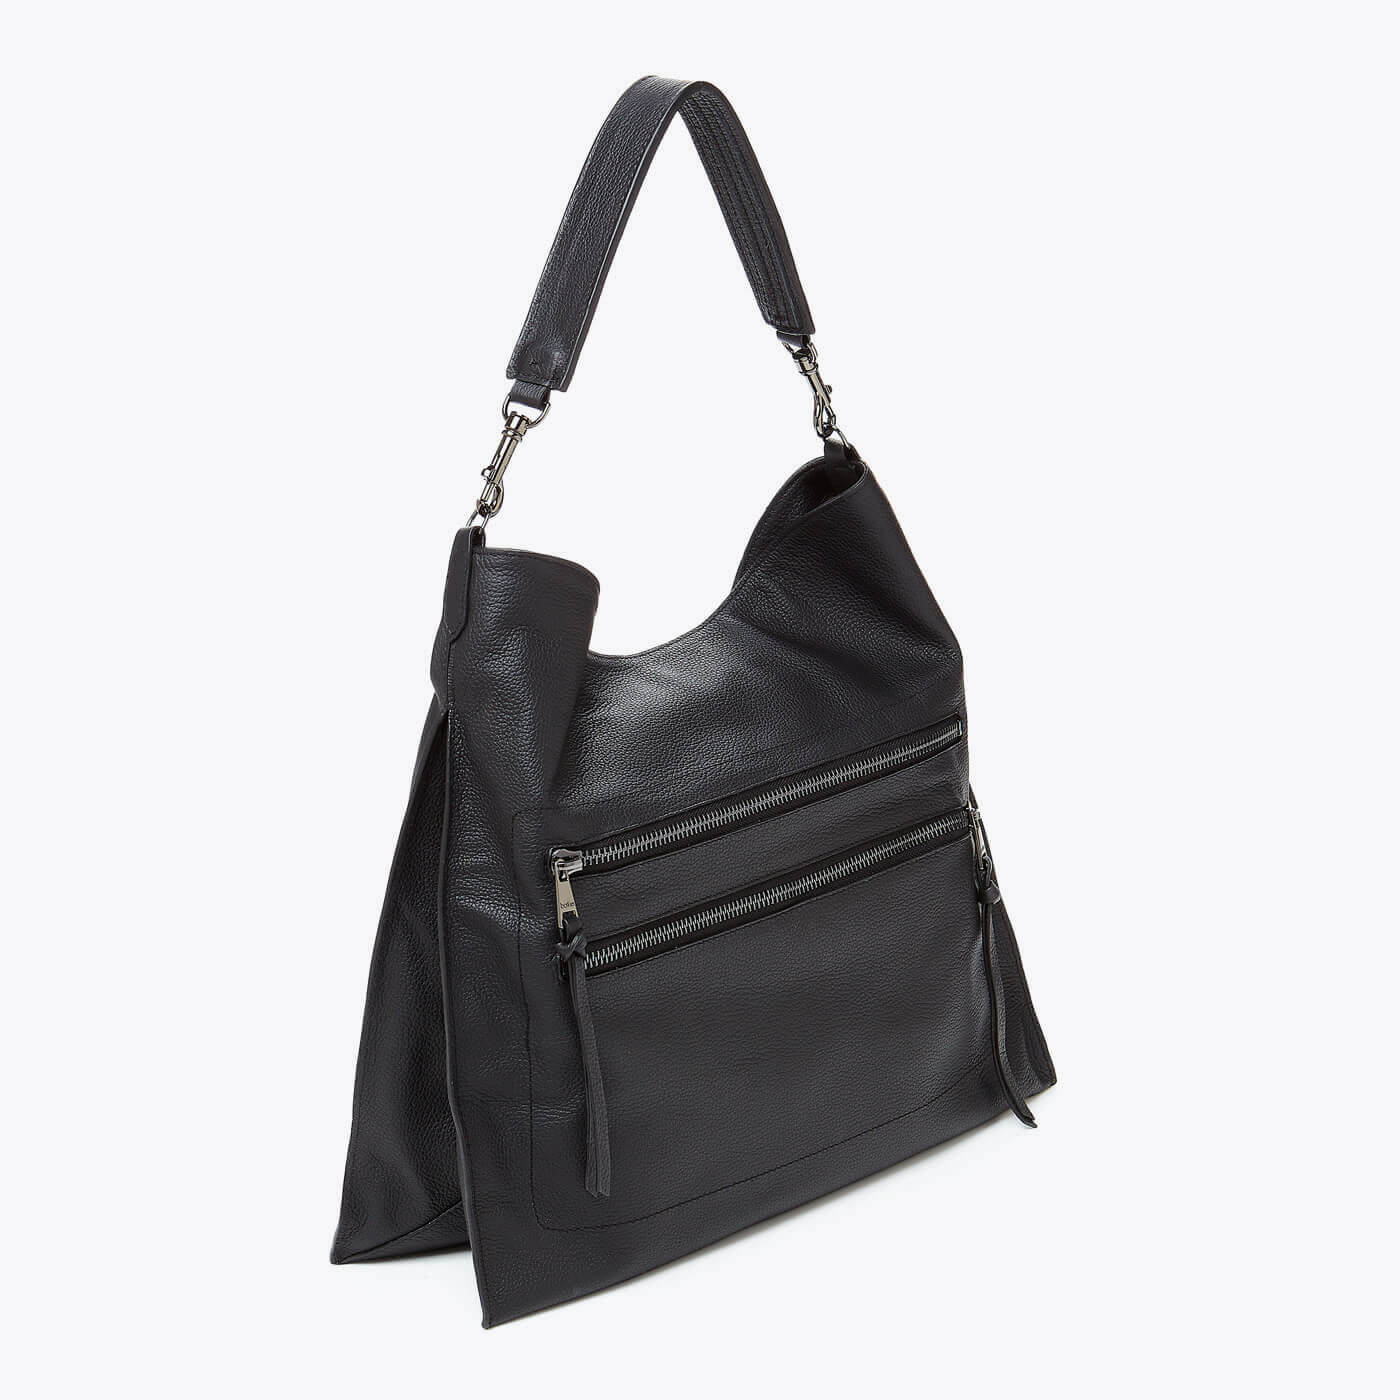 Chelsea Hobo (Black) - Designer Leather Handbags | Botkier New York ...